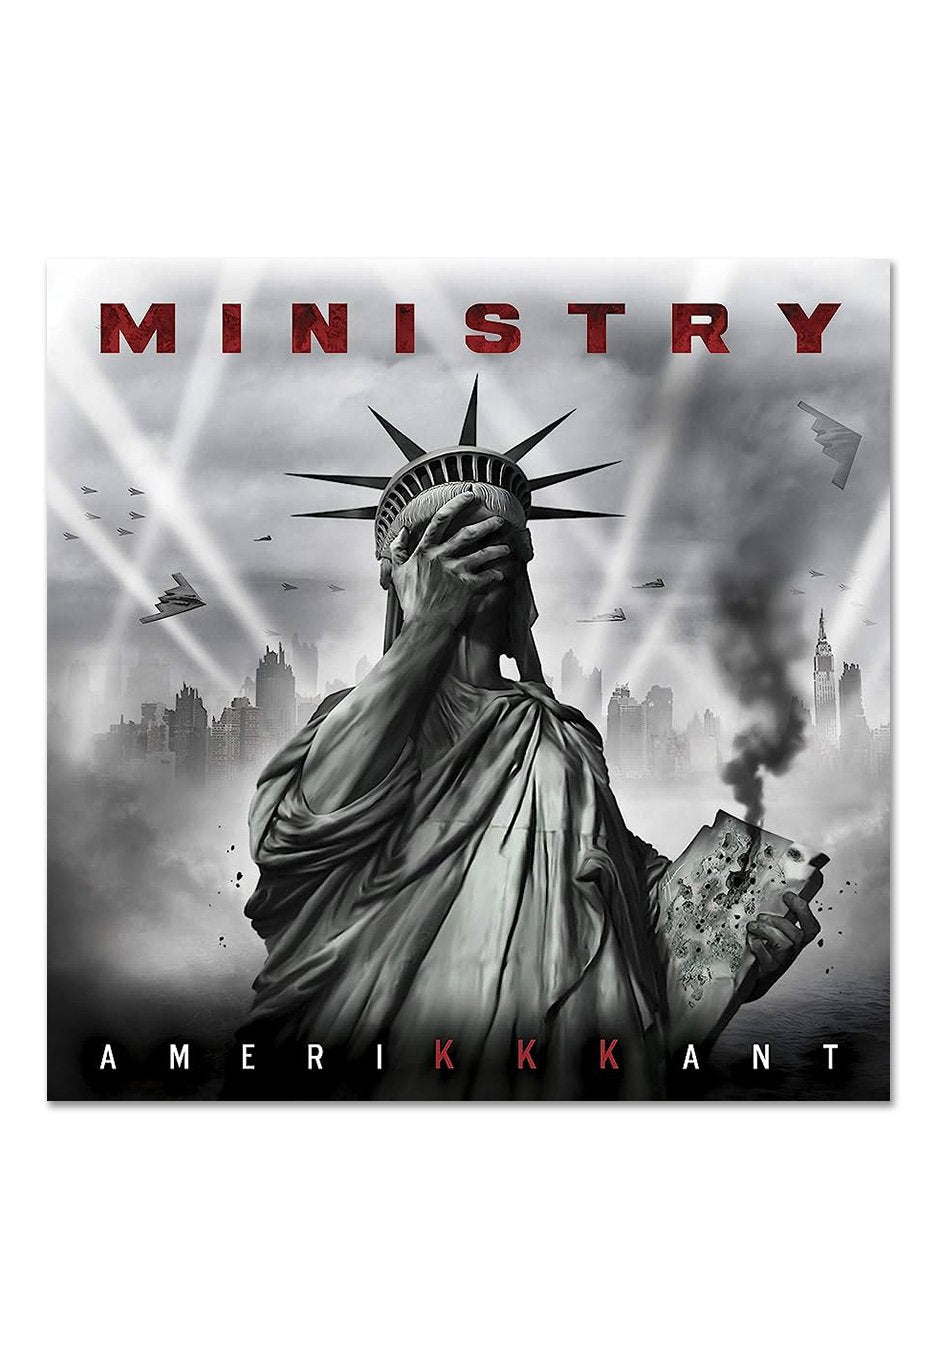 Ministry - AmeriKKKant Ltd. Grey w/ Black/White - Splattered Vinyl